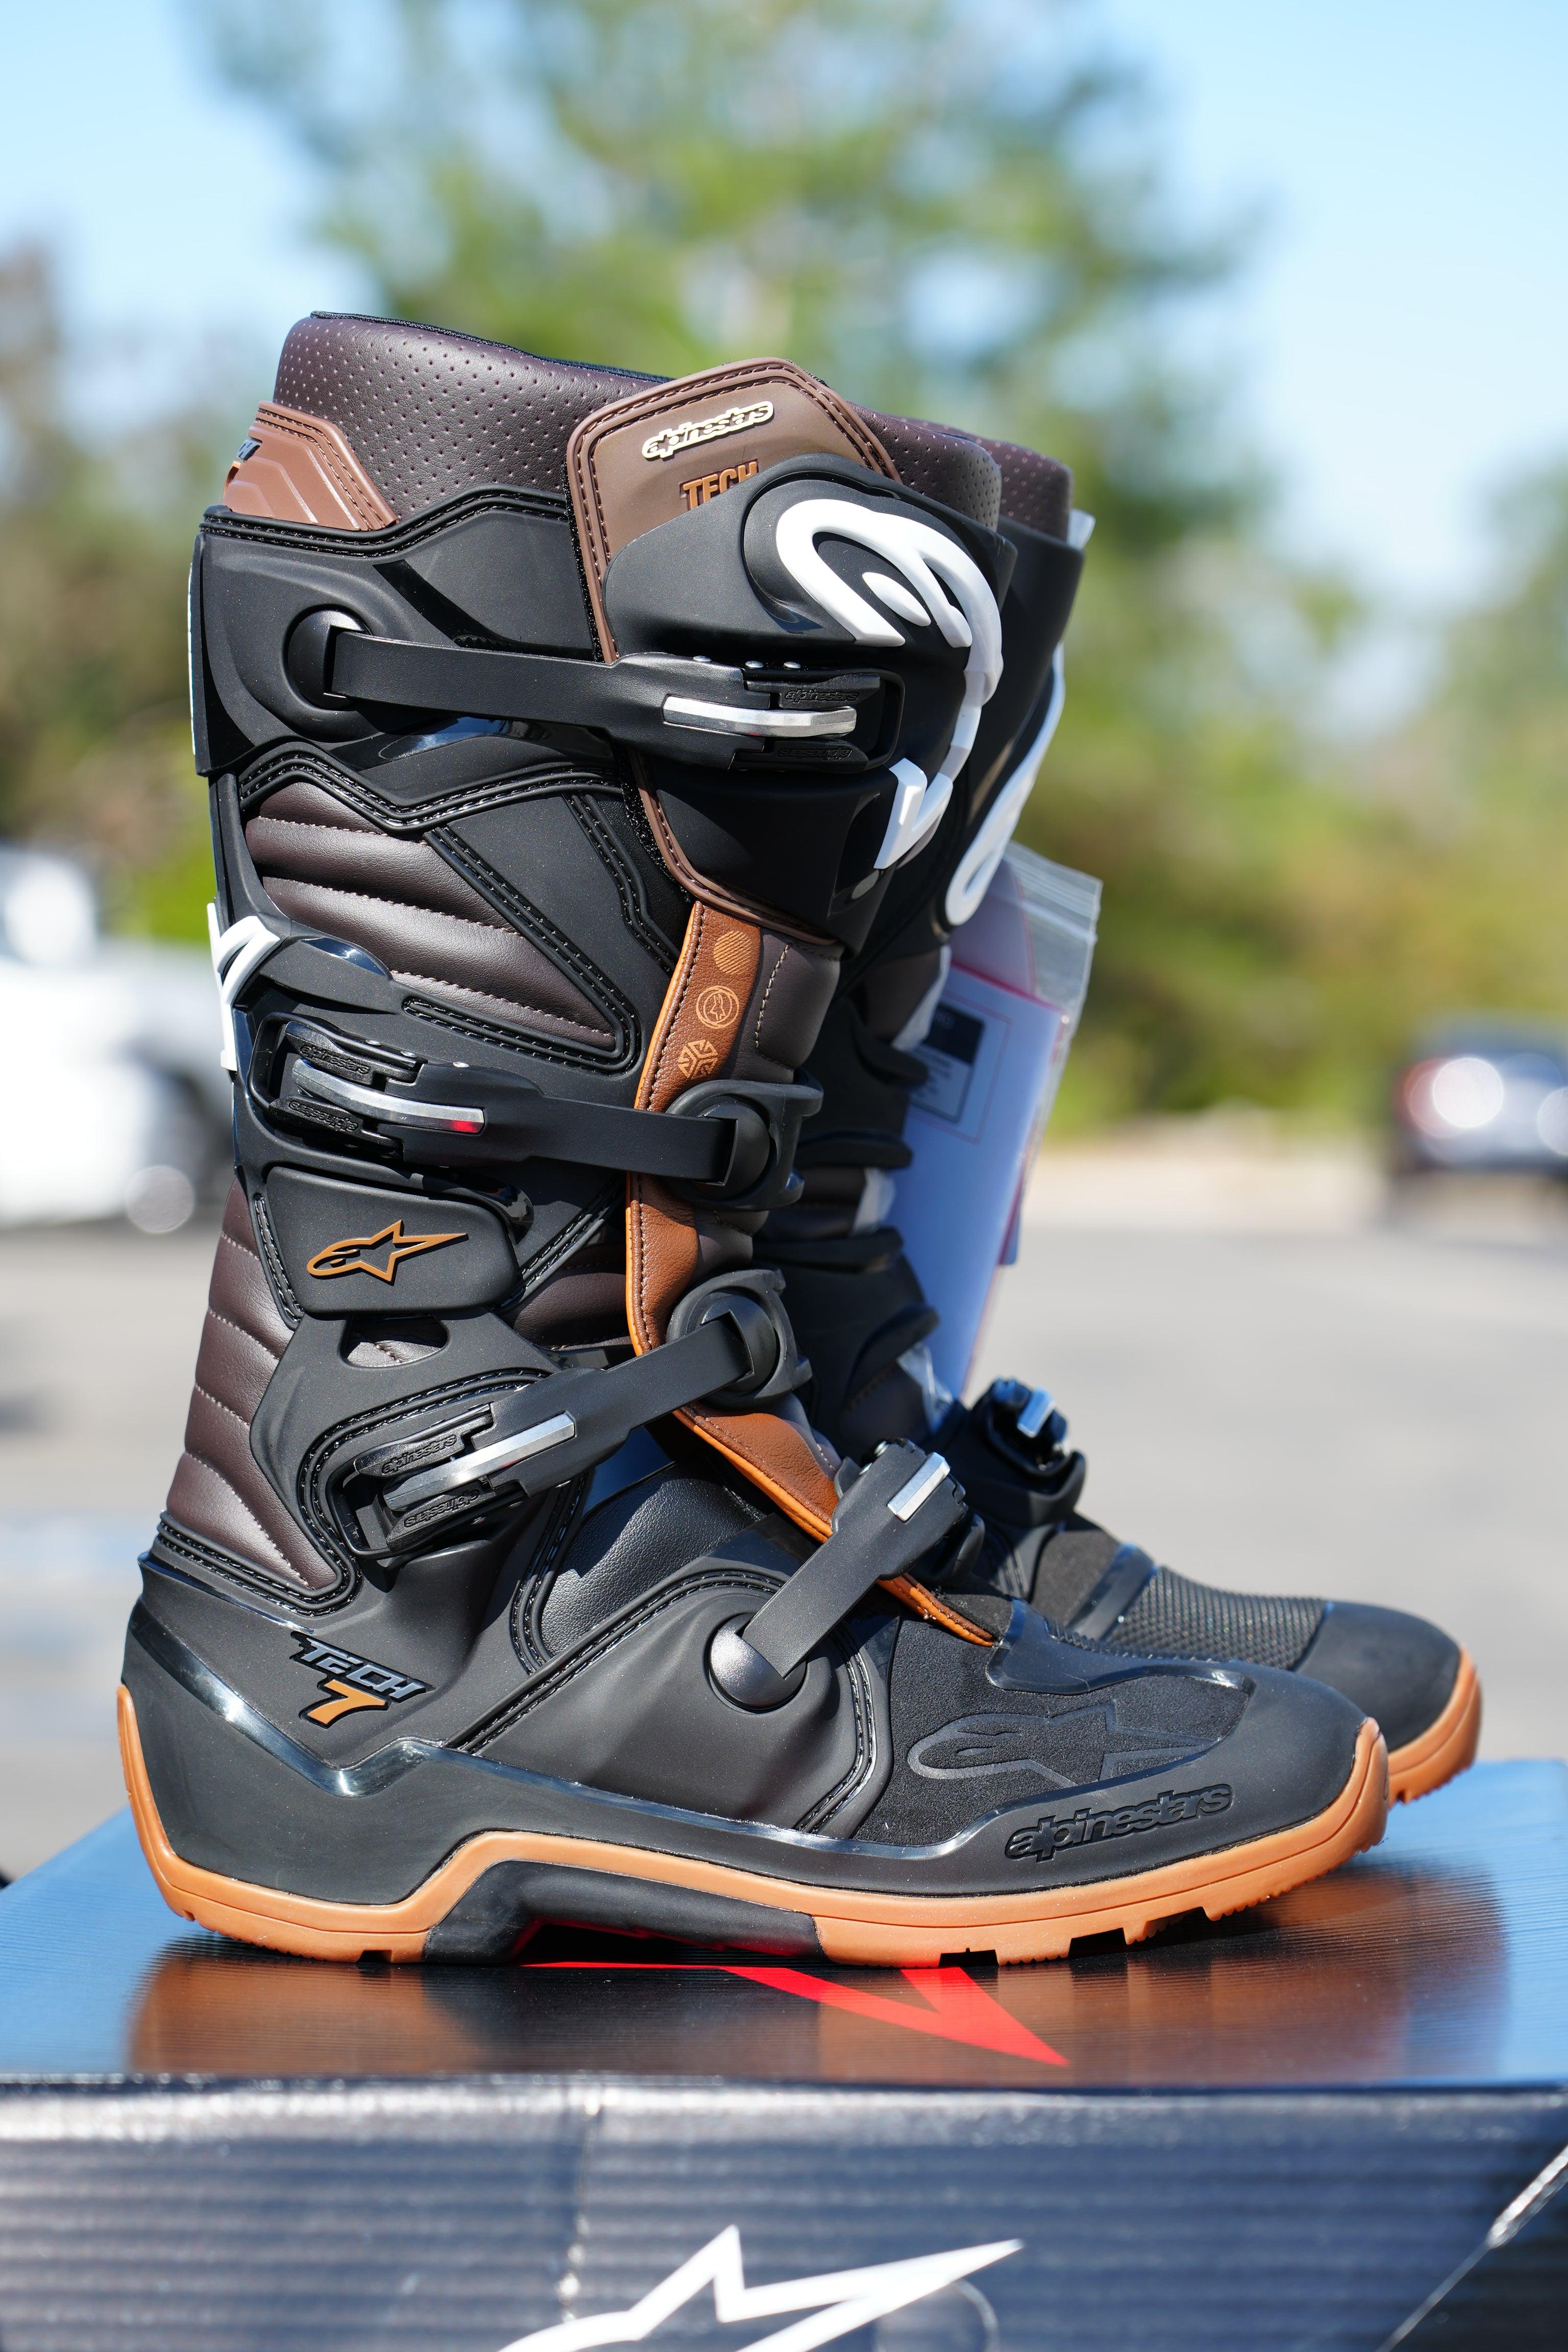 Alpinestars Tech 7 Enduro Black/Dark Brown Boots